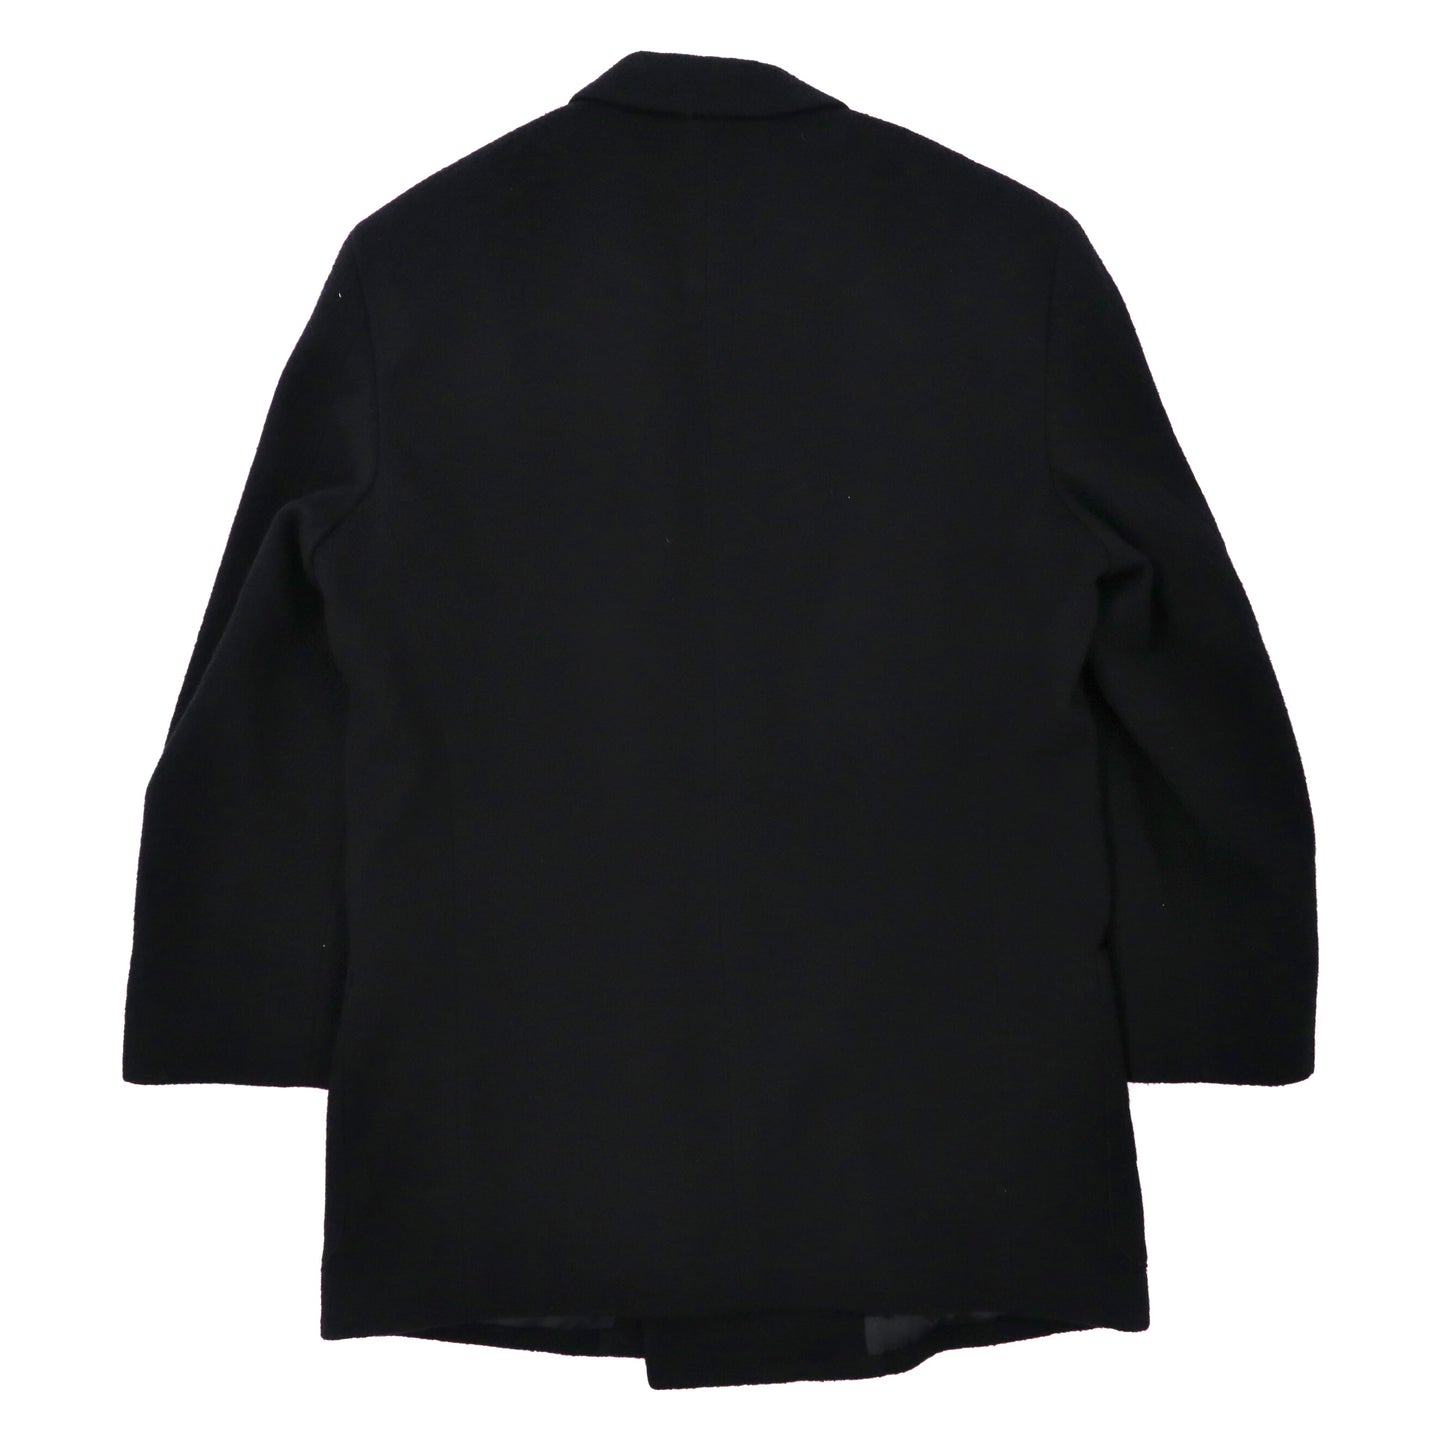 VALENZA PO SPORT ダブルブレスト テーラードジャケット M ブラック ウール 金ボタン エンブレムロゴ 80年代 日本製